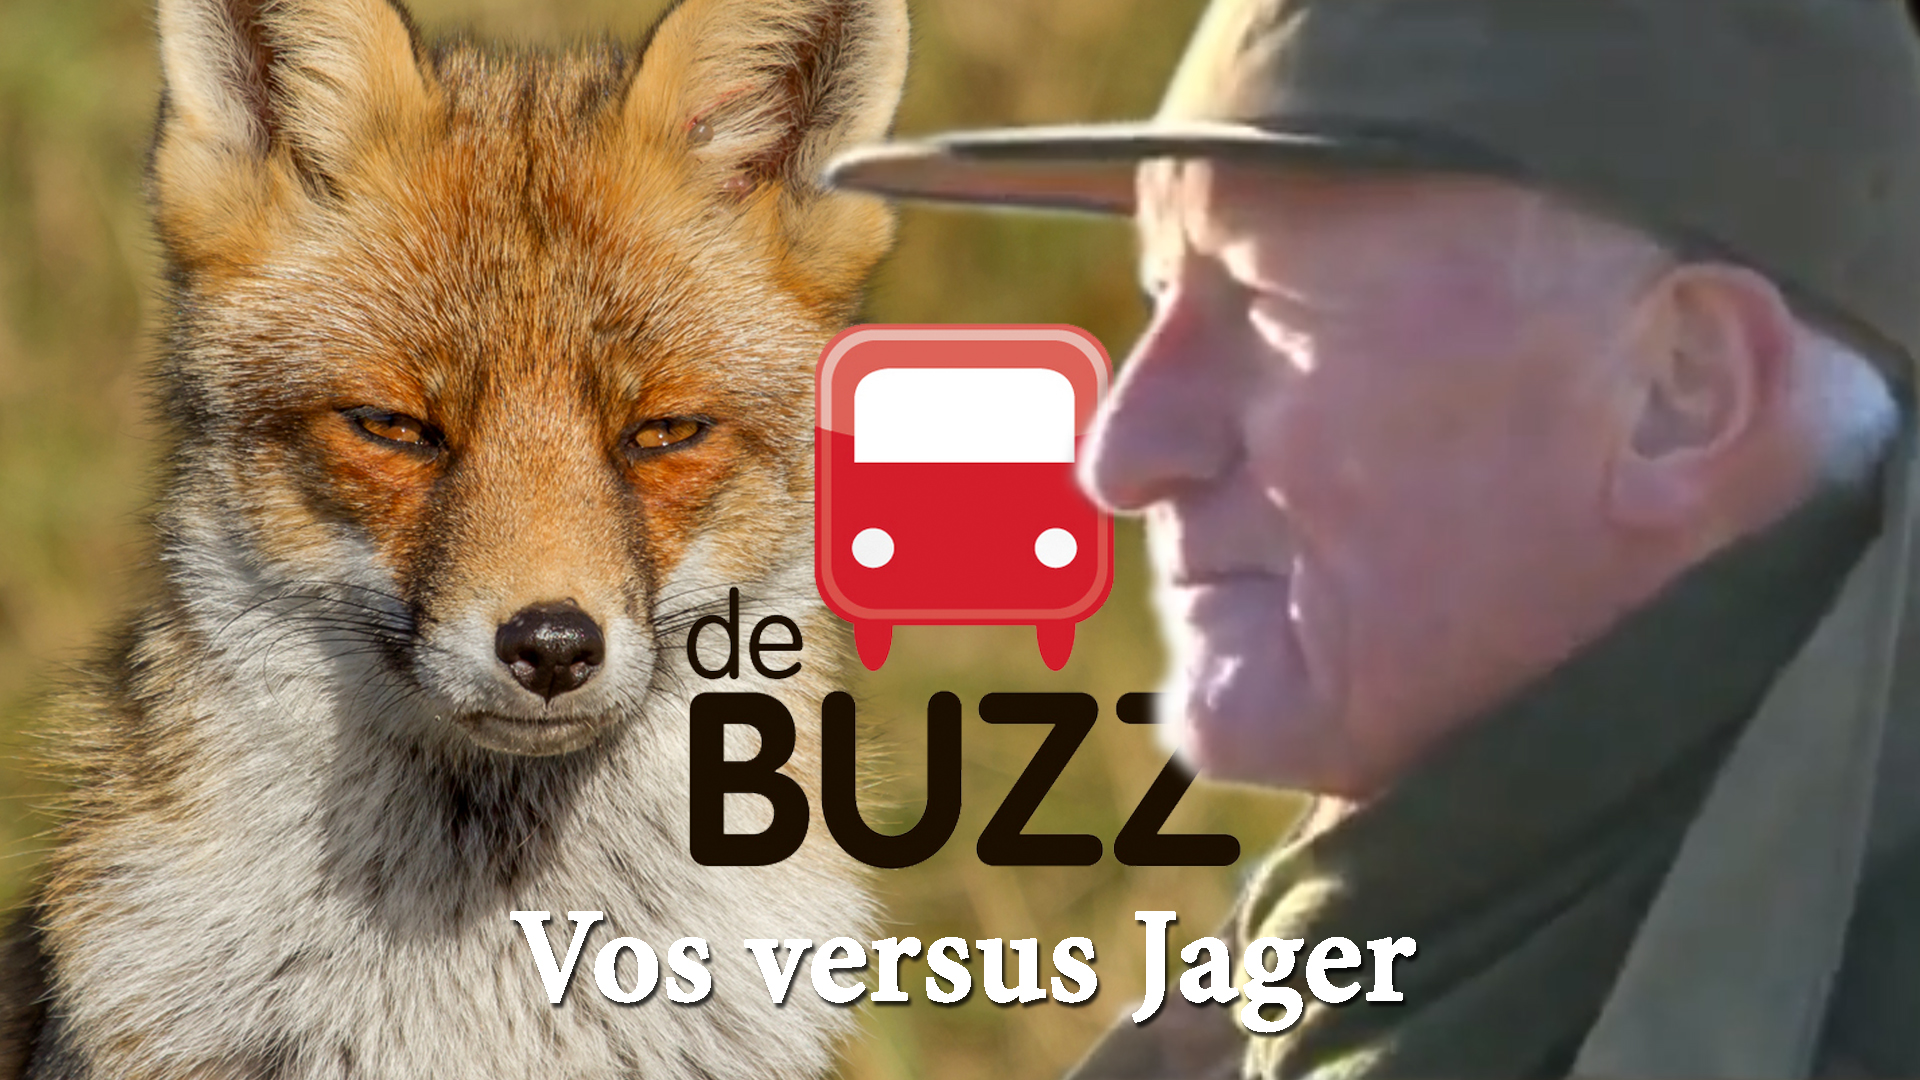 Vos versus Jager